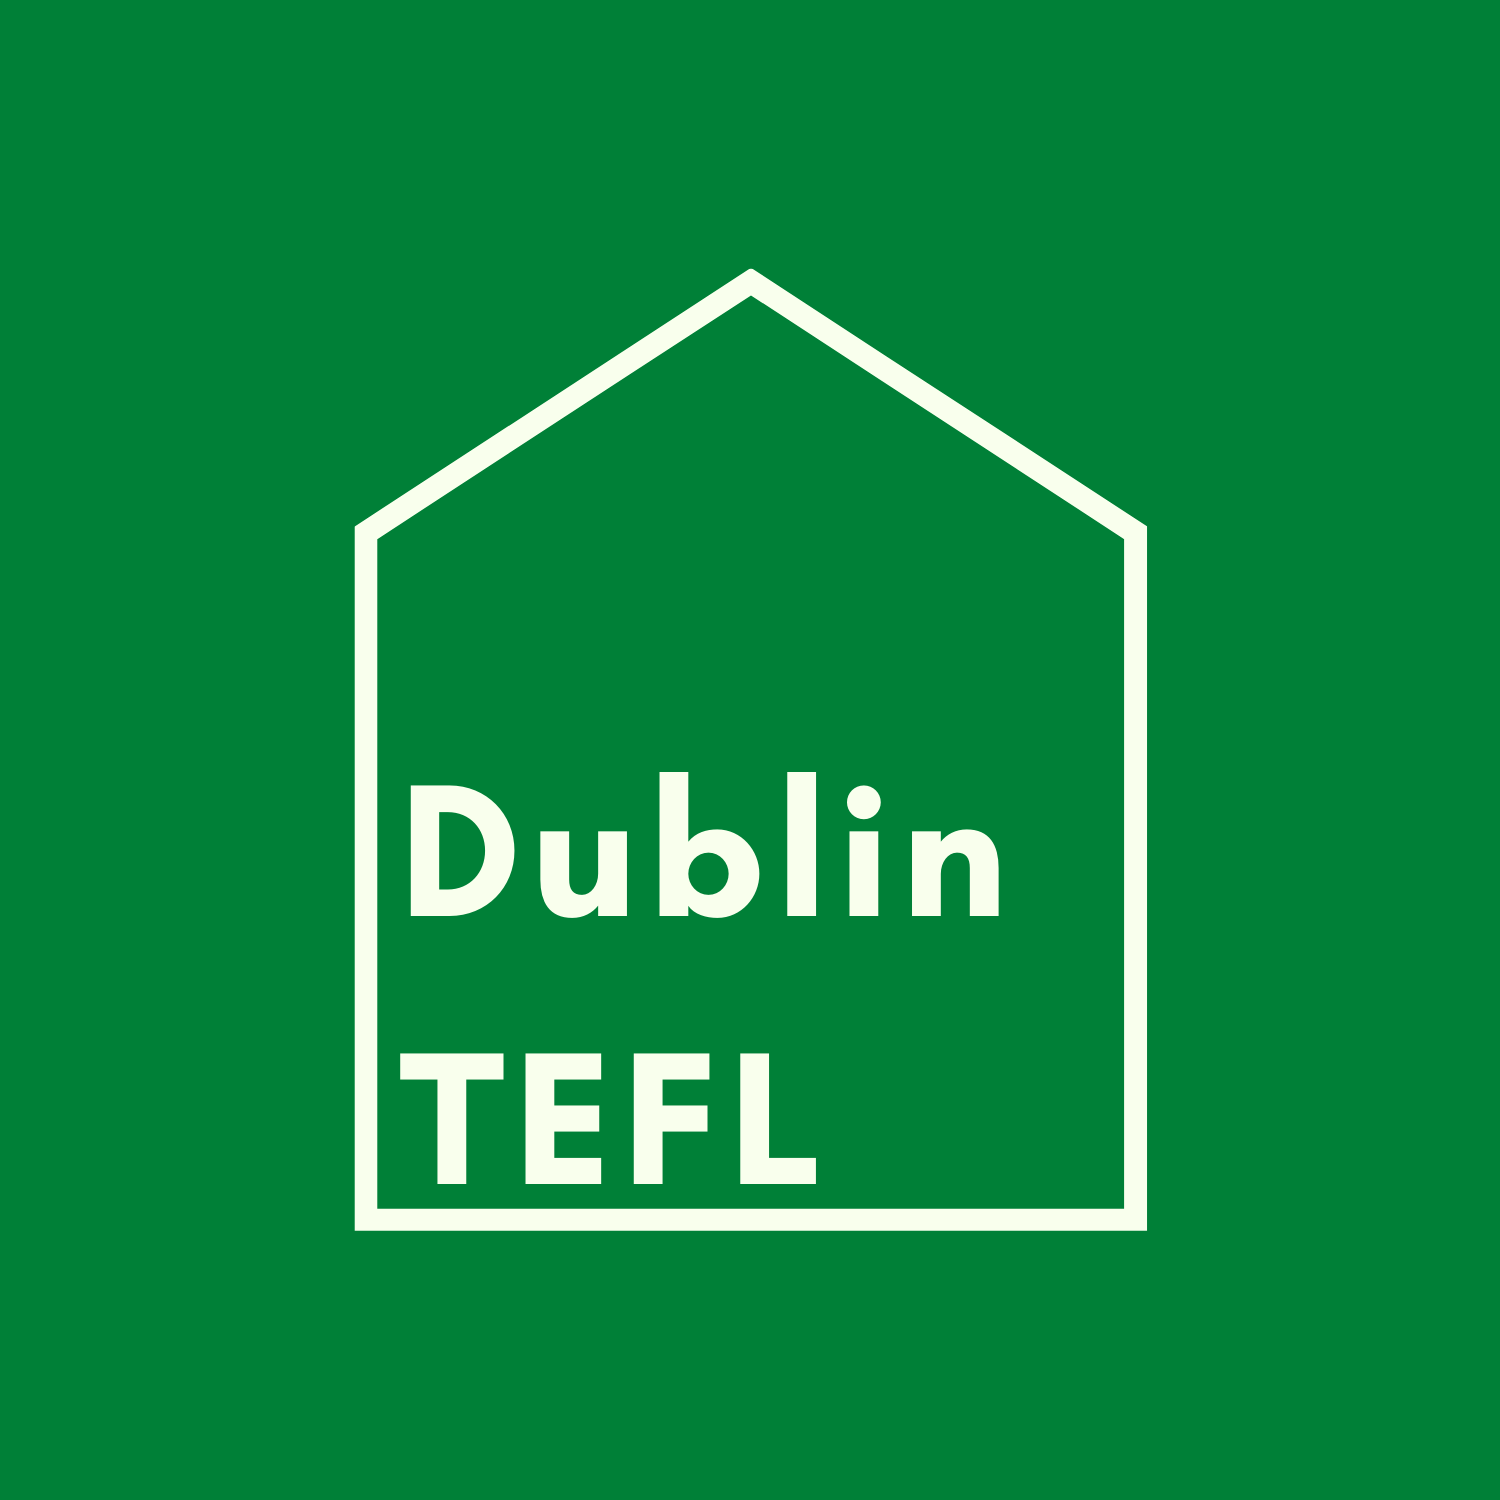 Dublin TEFL